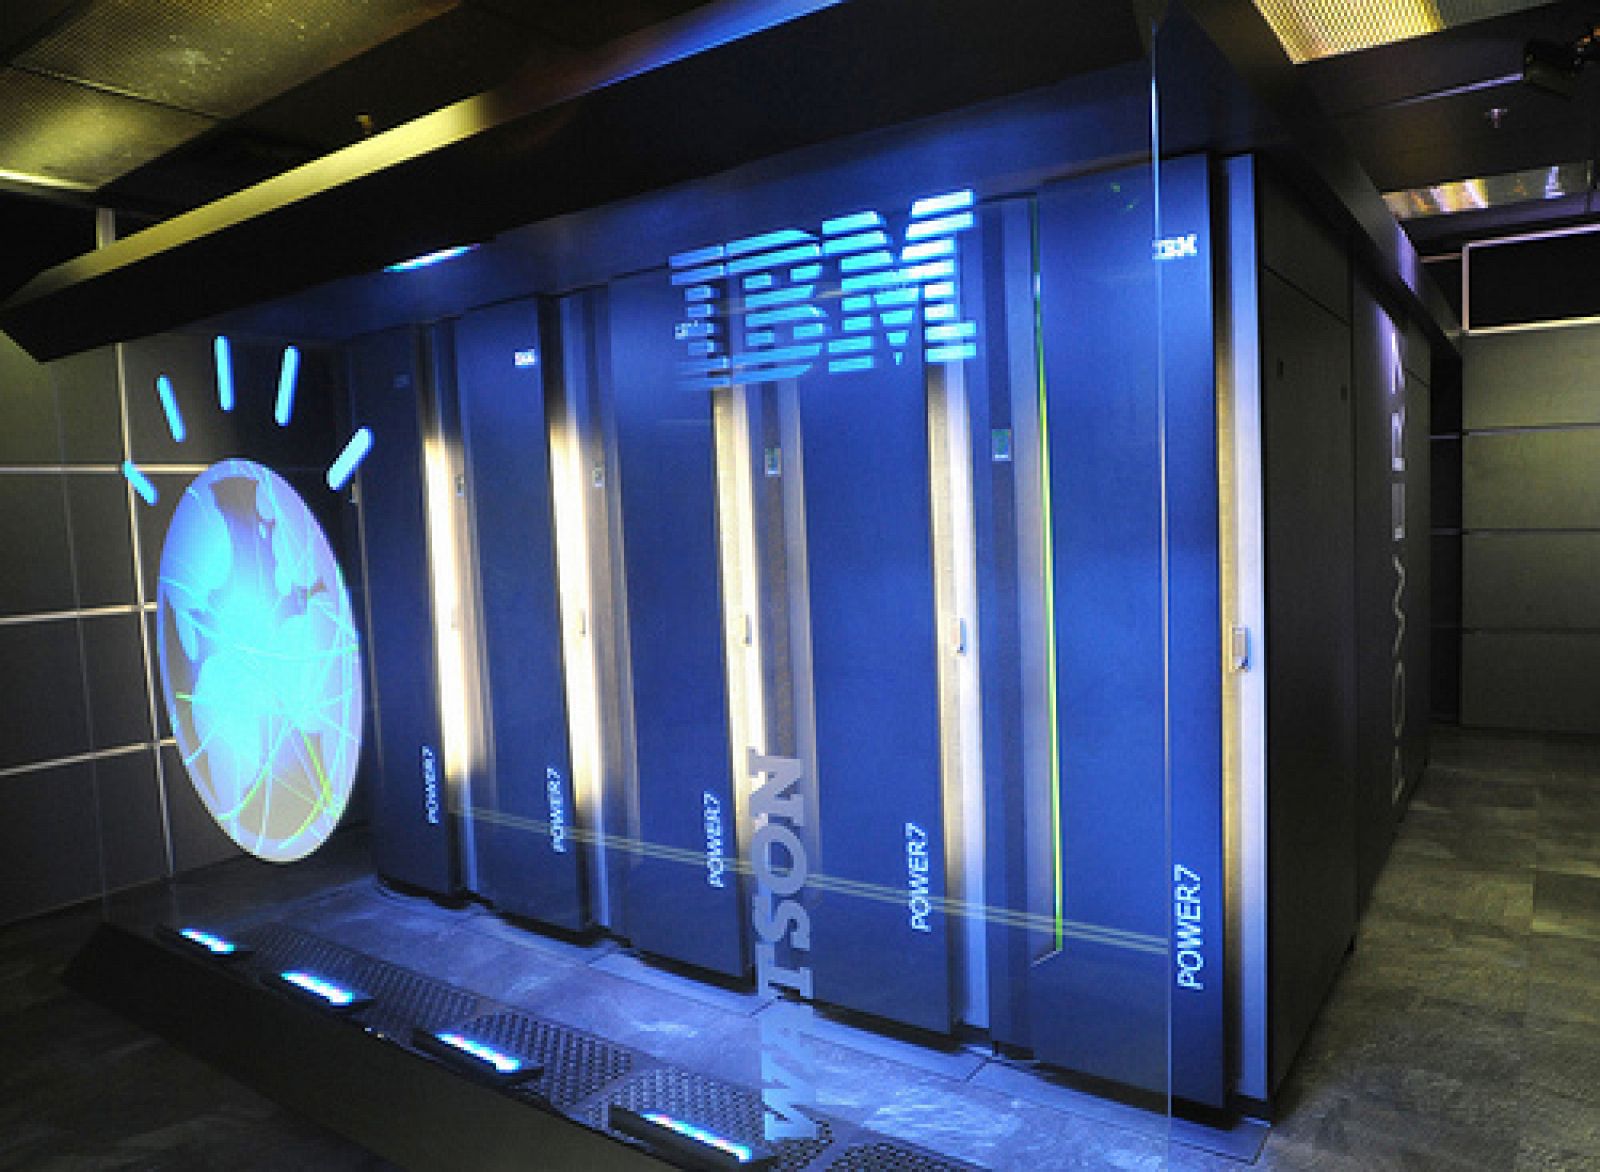 Watson, el superordenador de IBM que competirá contra dos humanos.